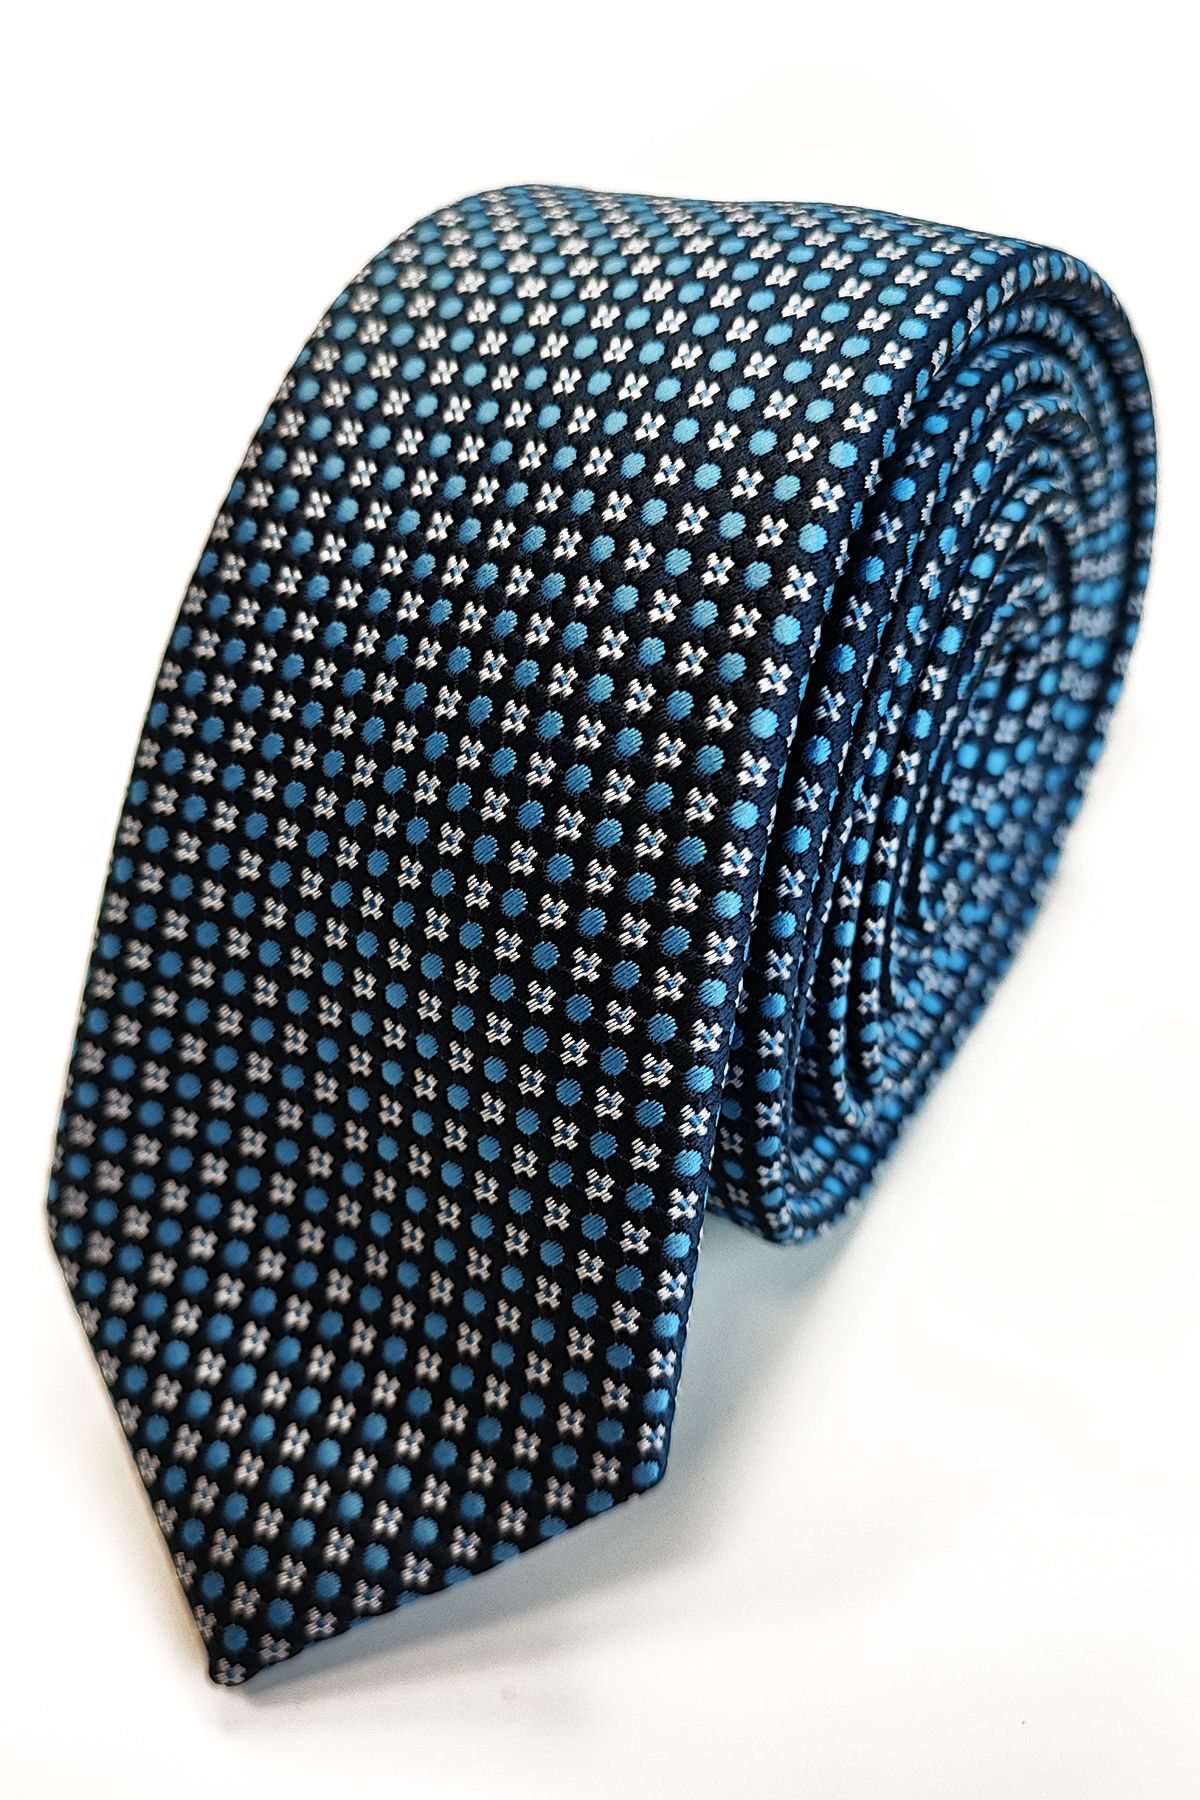 PATTERNED nyakkendő (w-033) slim